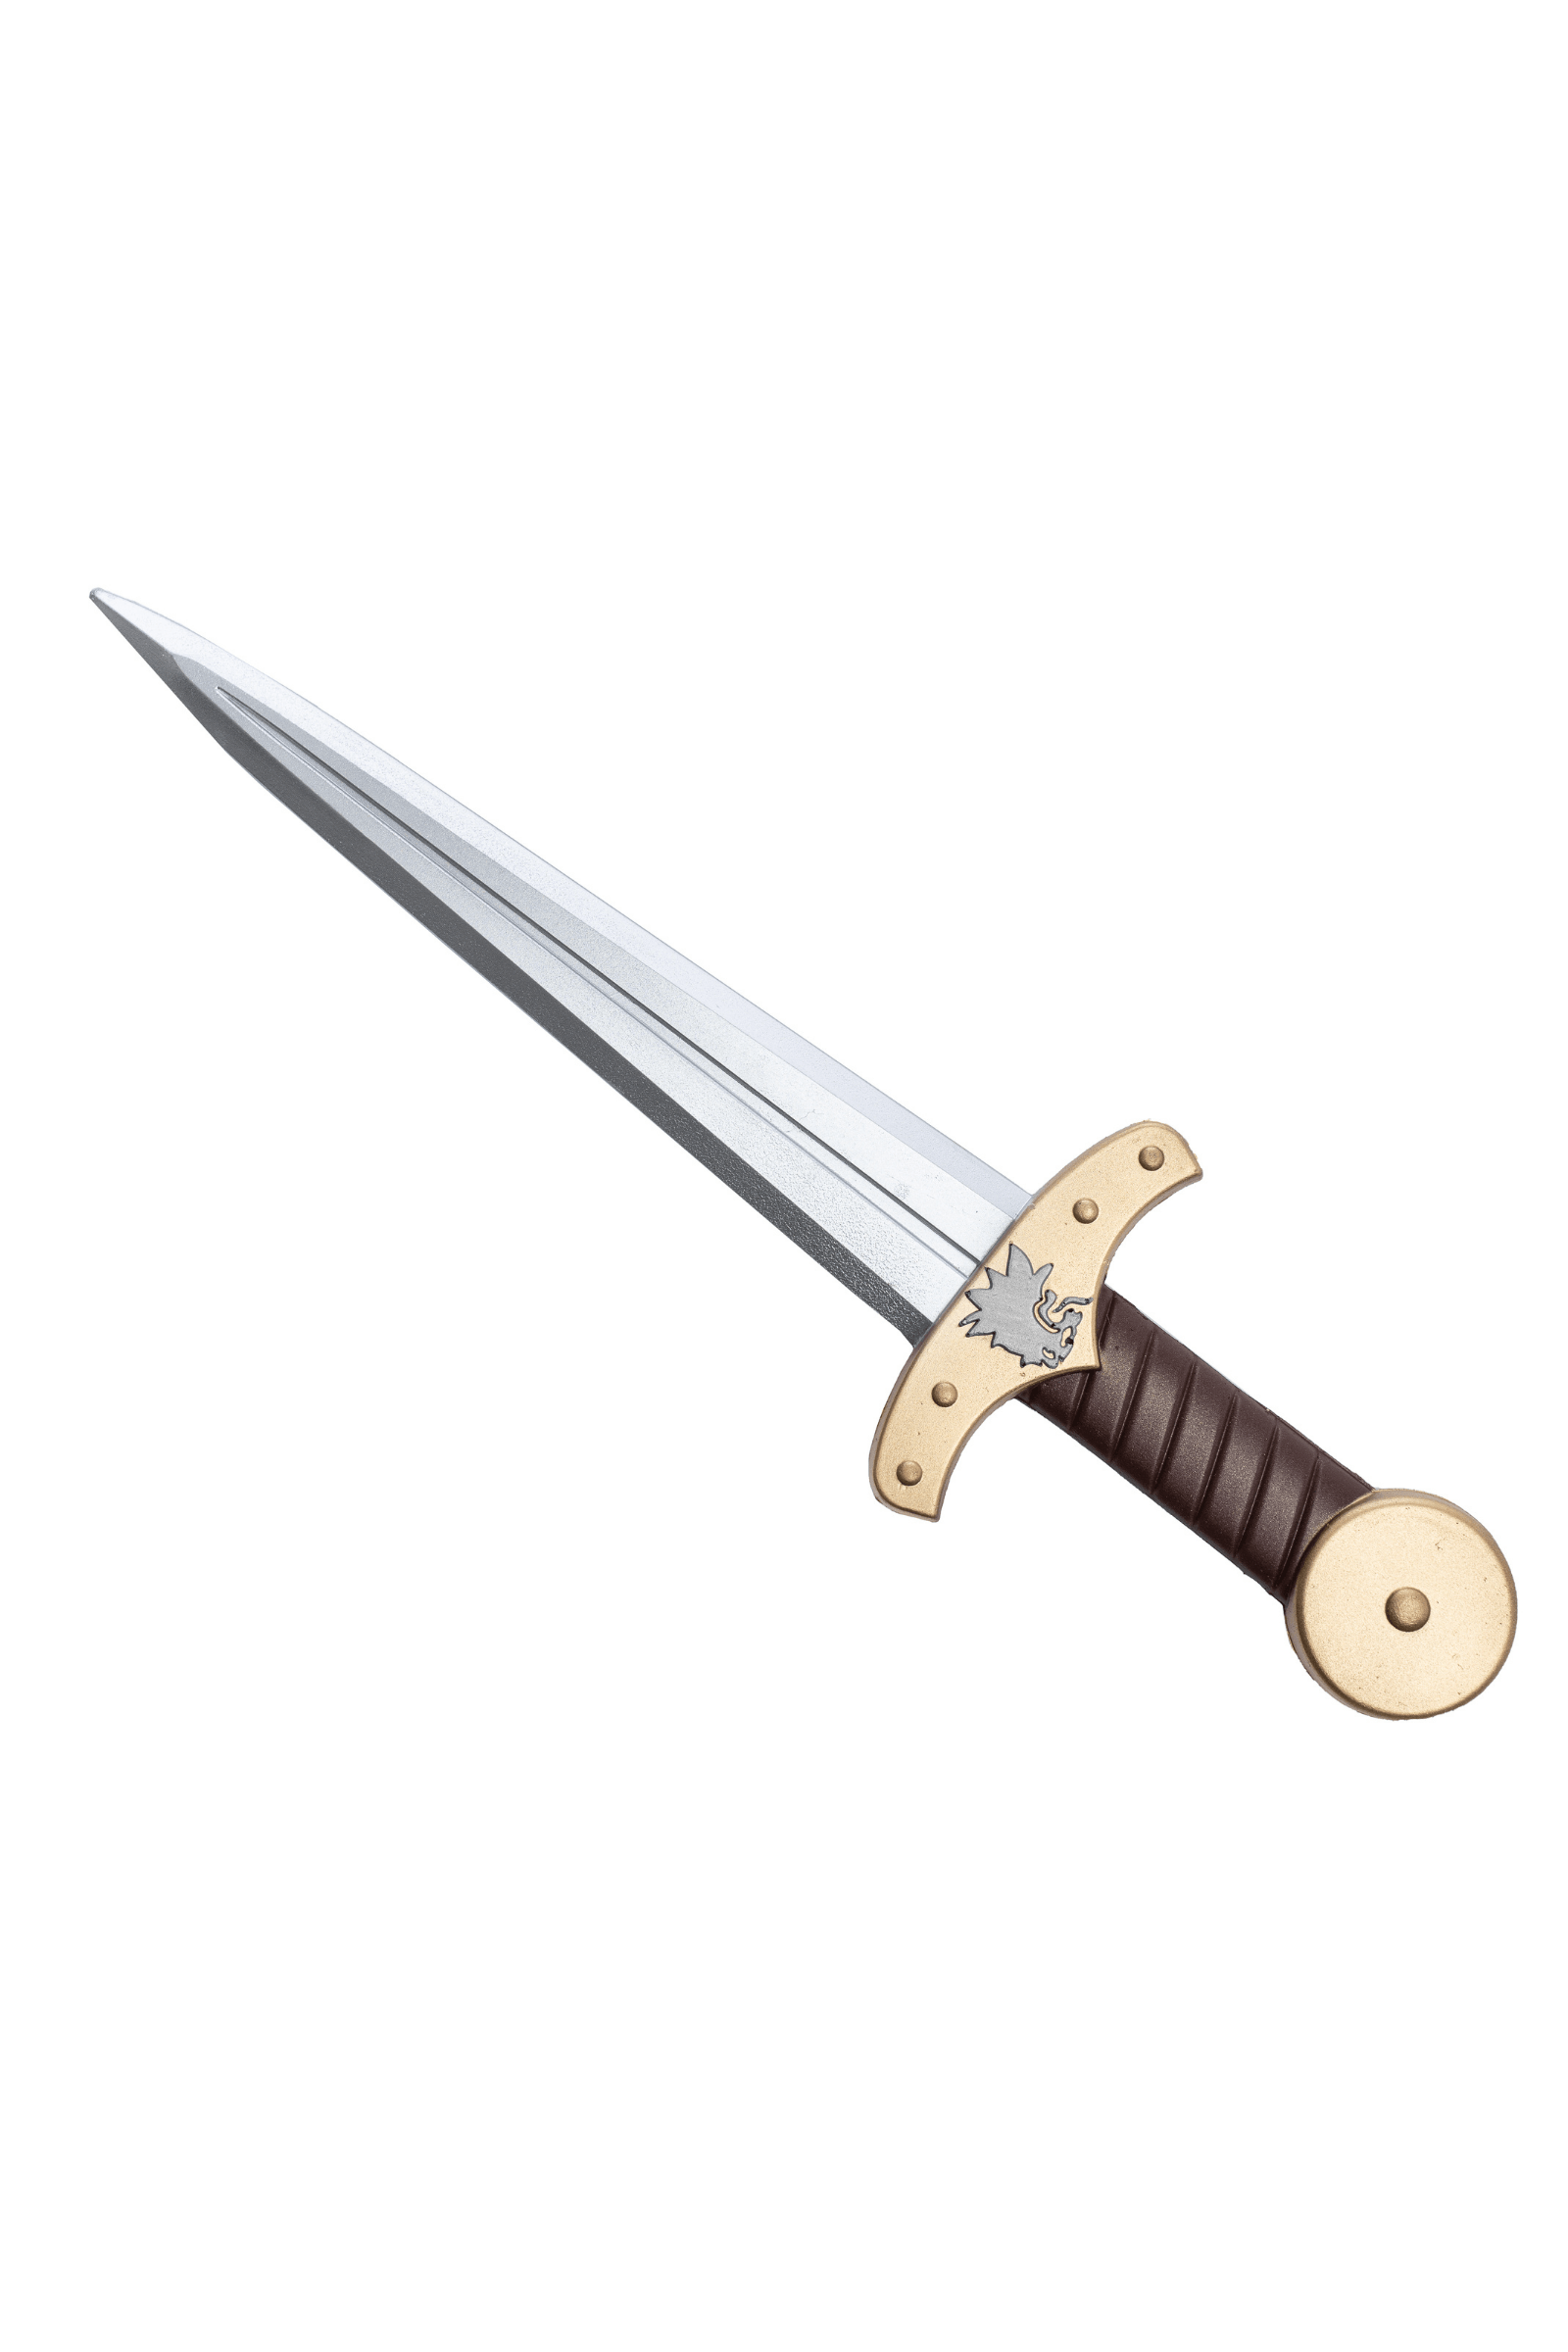 Dague de gladiateur - La Ribouldingue